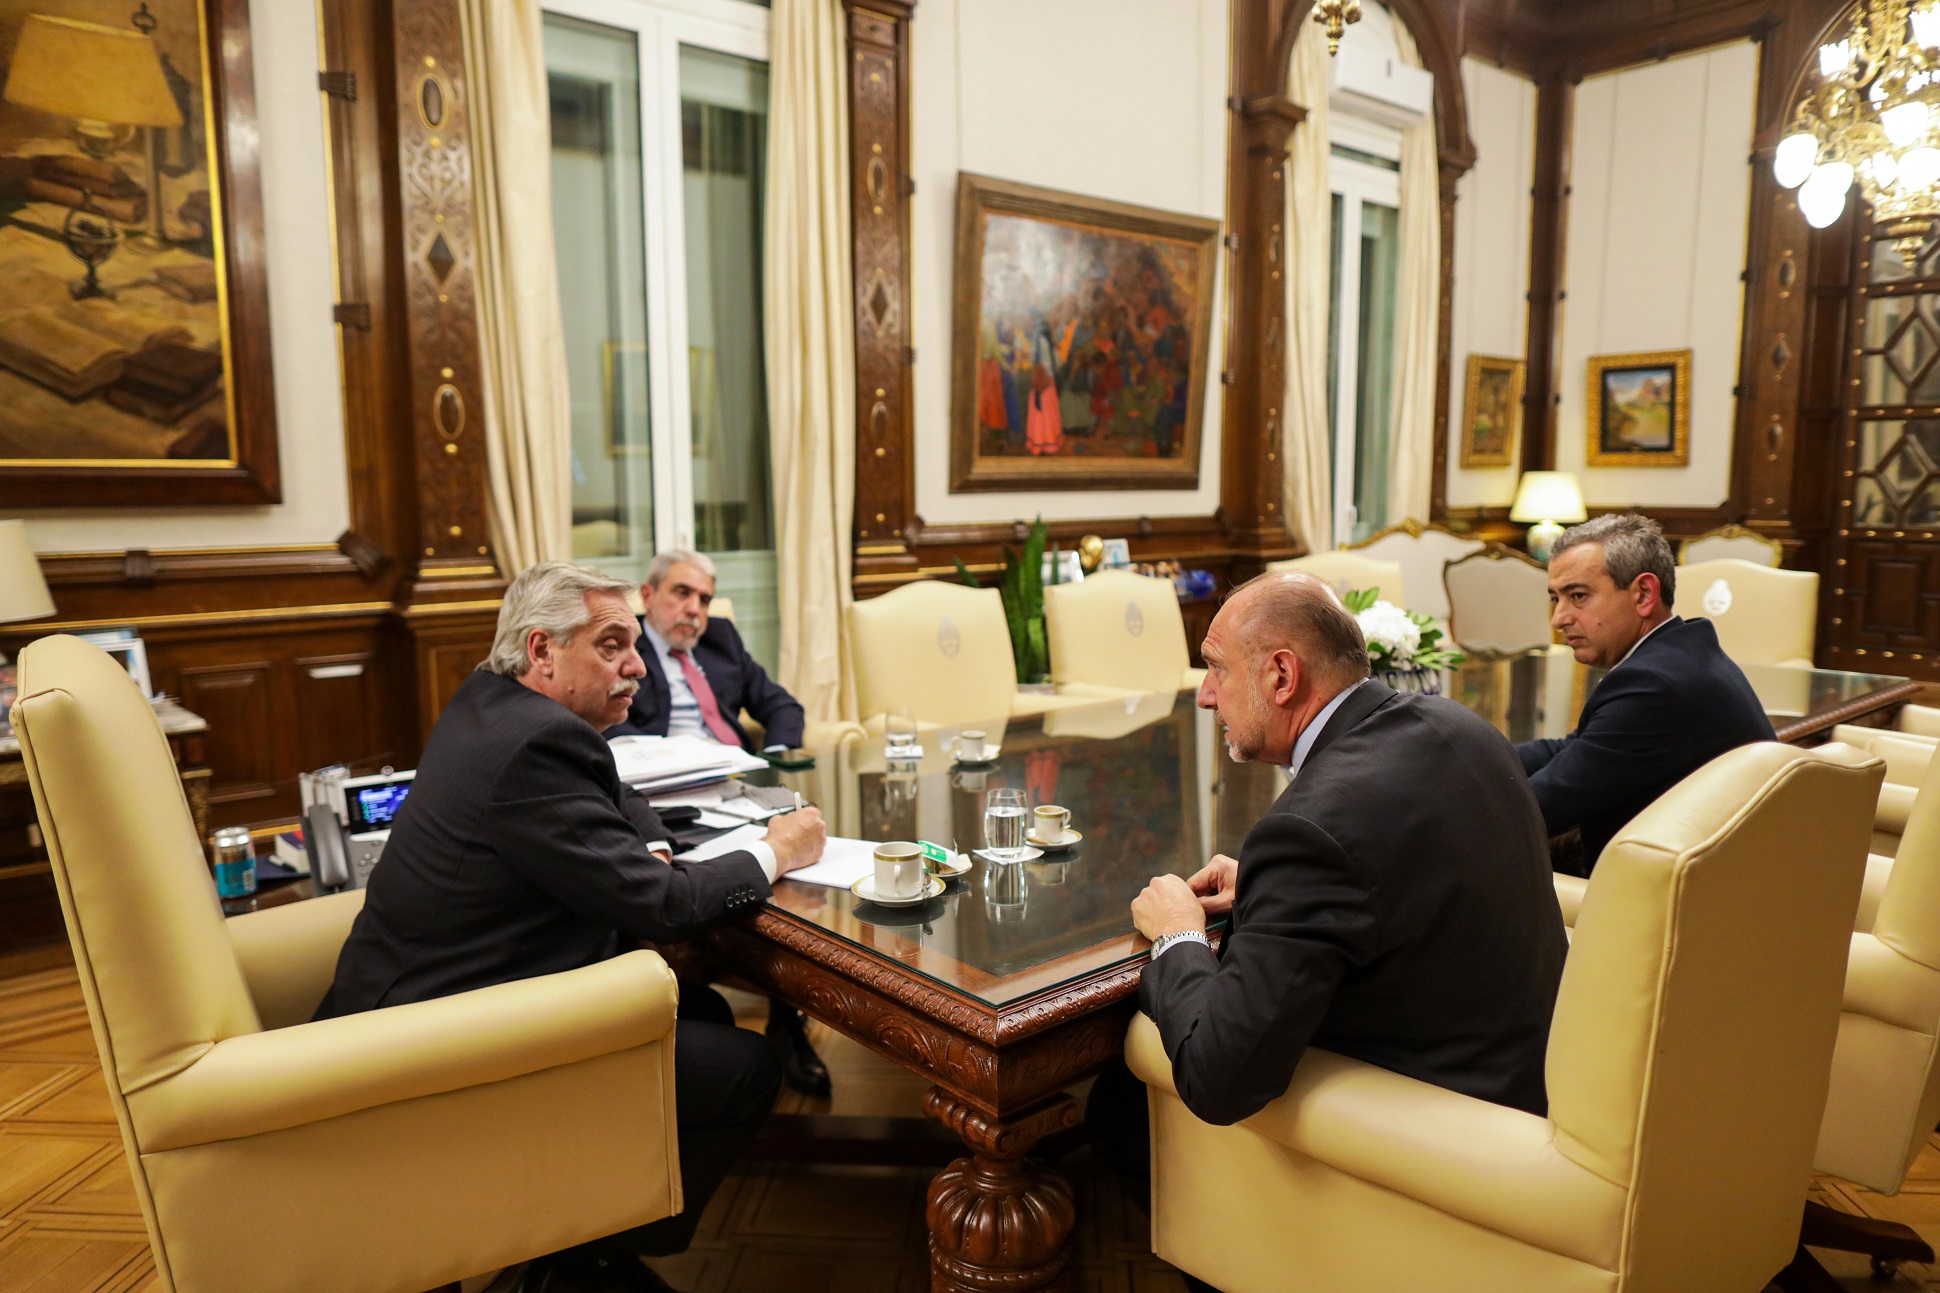 El presidente se comprometió a reforzar la seguridad de Rosario durante un encuentro con el gobernador Perotti y el intendente Javkin